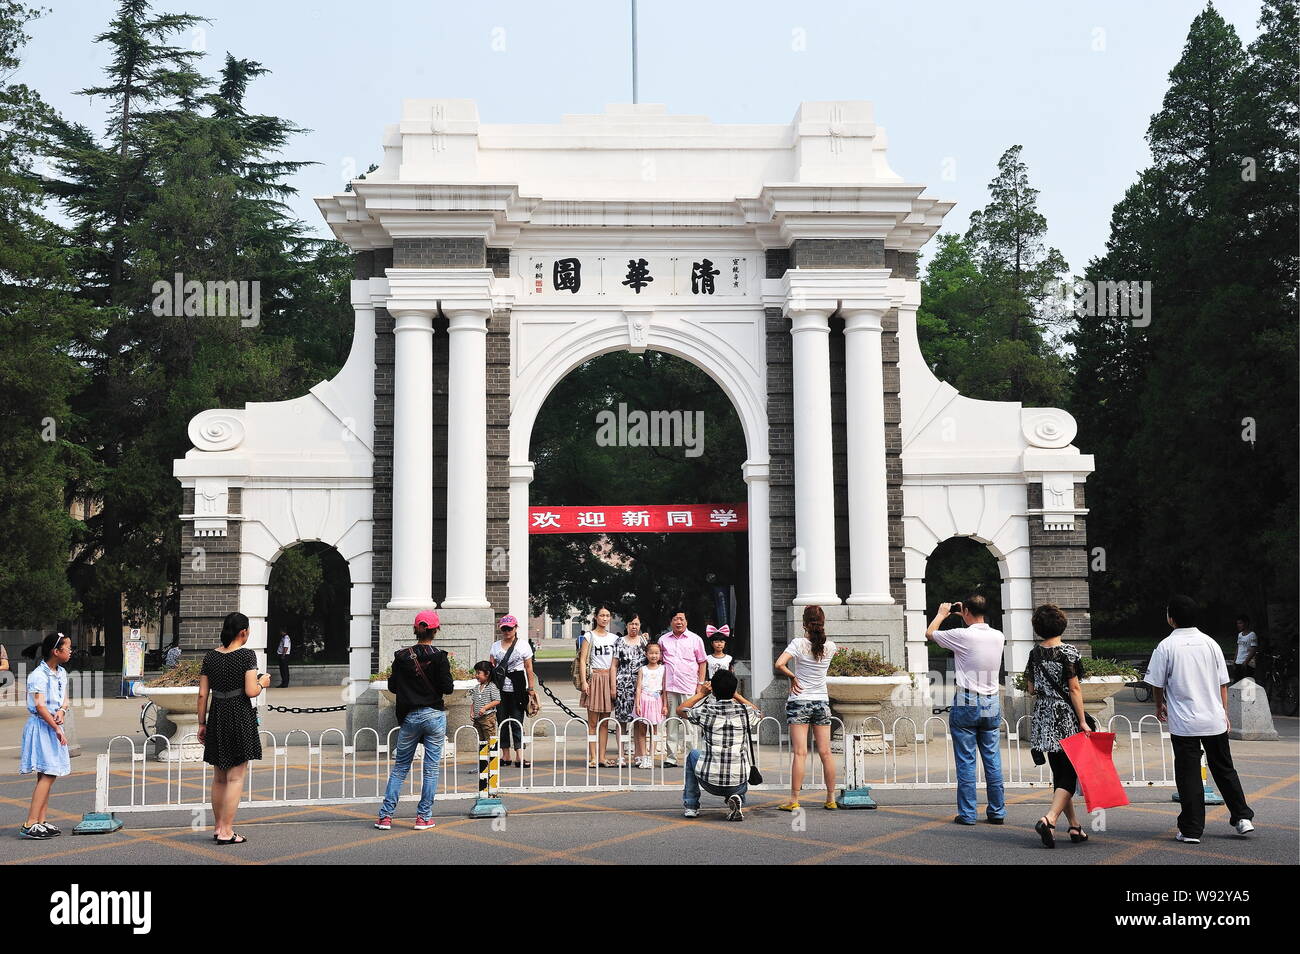 --FILE-pueblo tomar fotos en la segunda puerta simbólica de la Universidad de Tsinghua en Beijing, China, 23 de agosto de 2011. Universidad de Tsinghua, reveale chinas Foto de stock